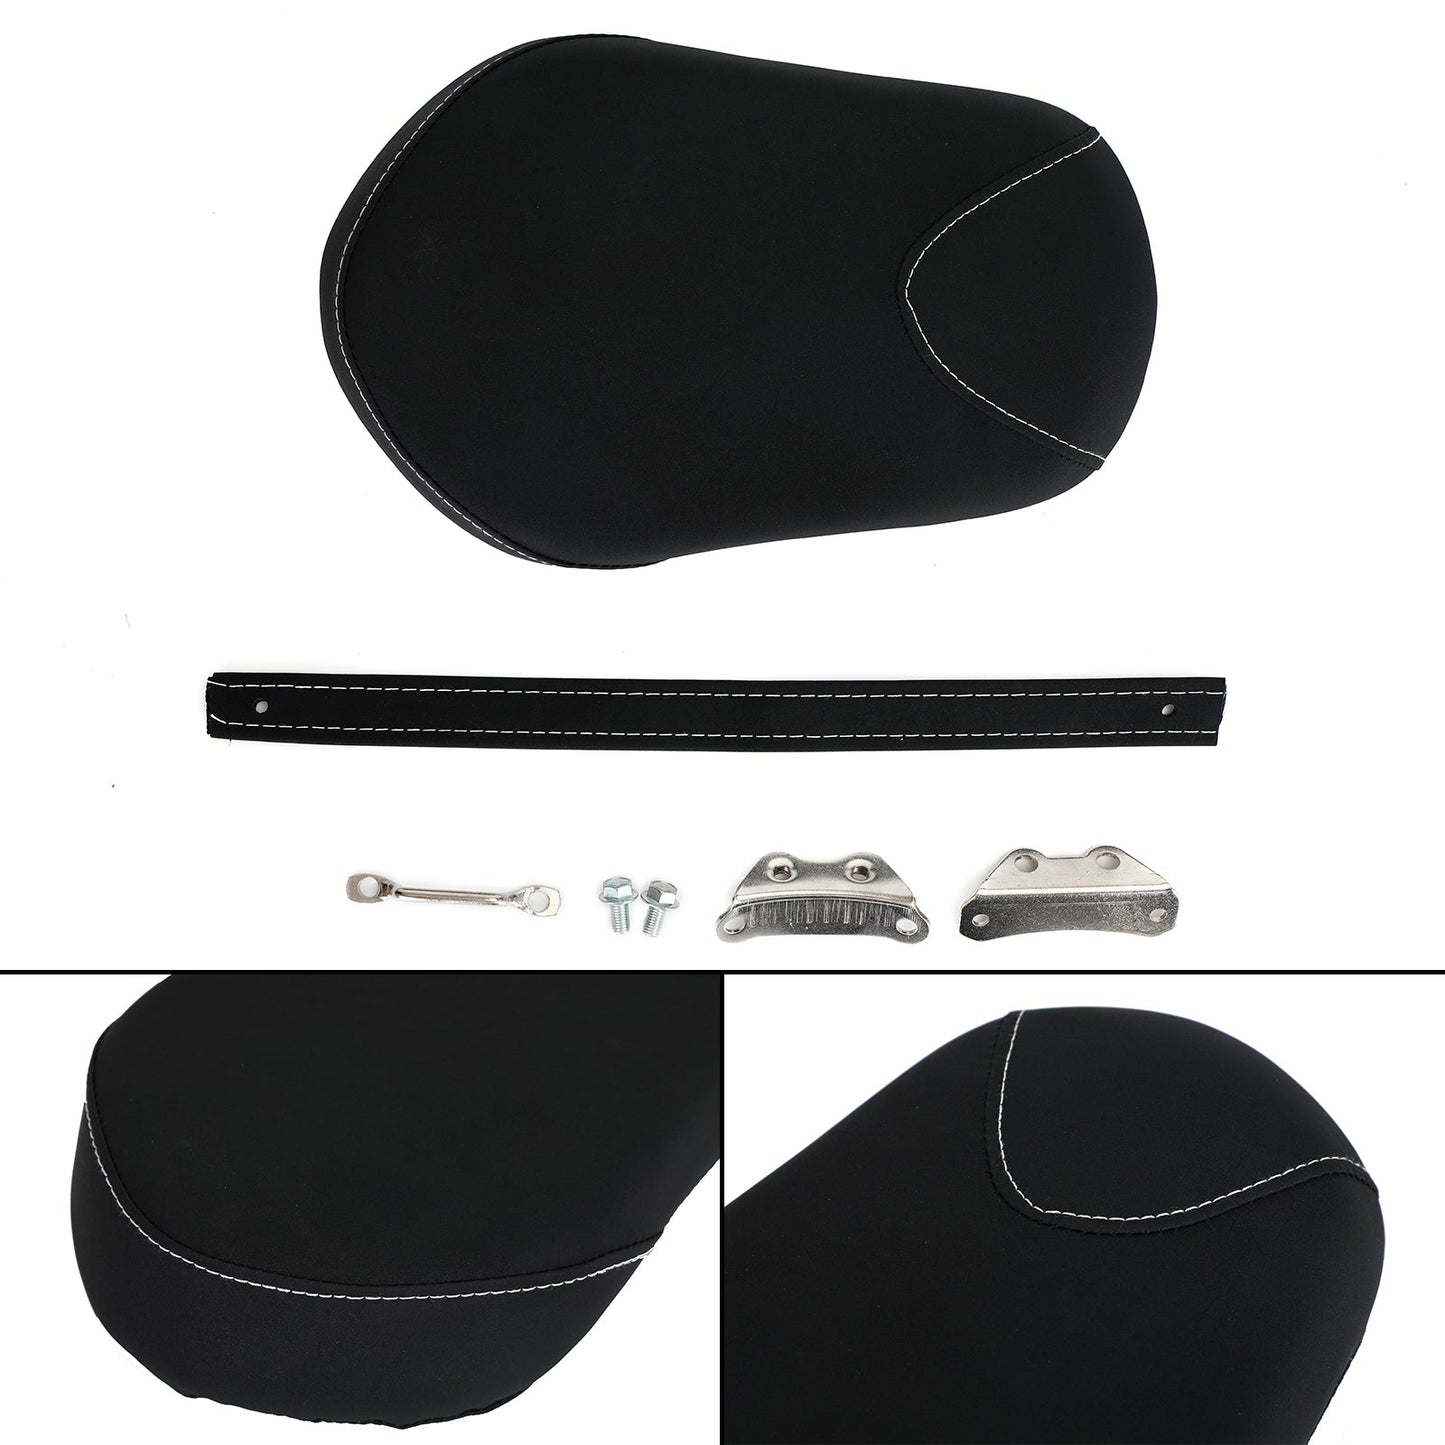 Hinteren Beifahrersitz schwarzes Kissen für Yamaha Bolt XV950 XV 950 14-17